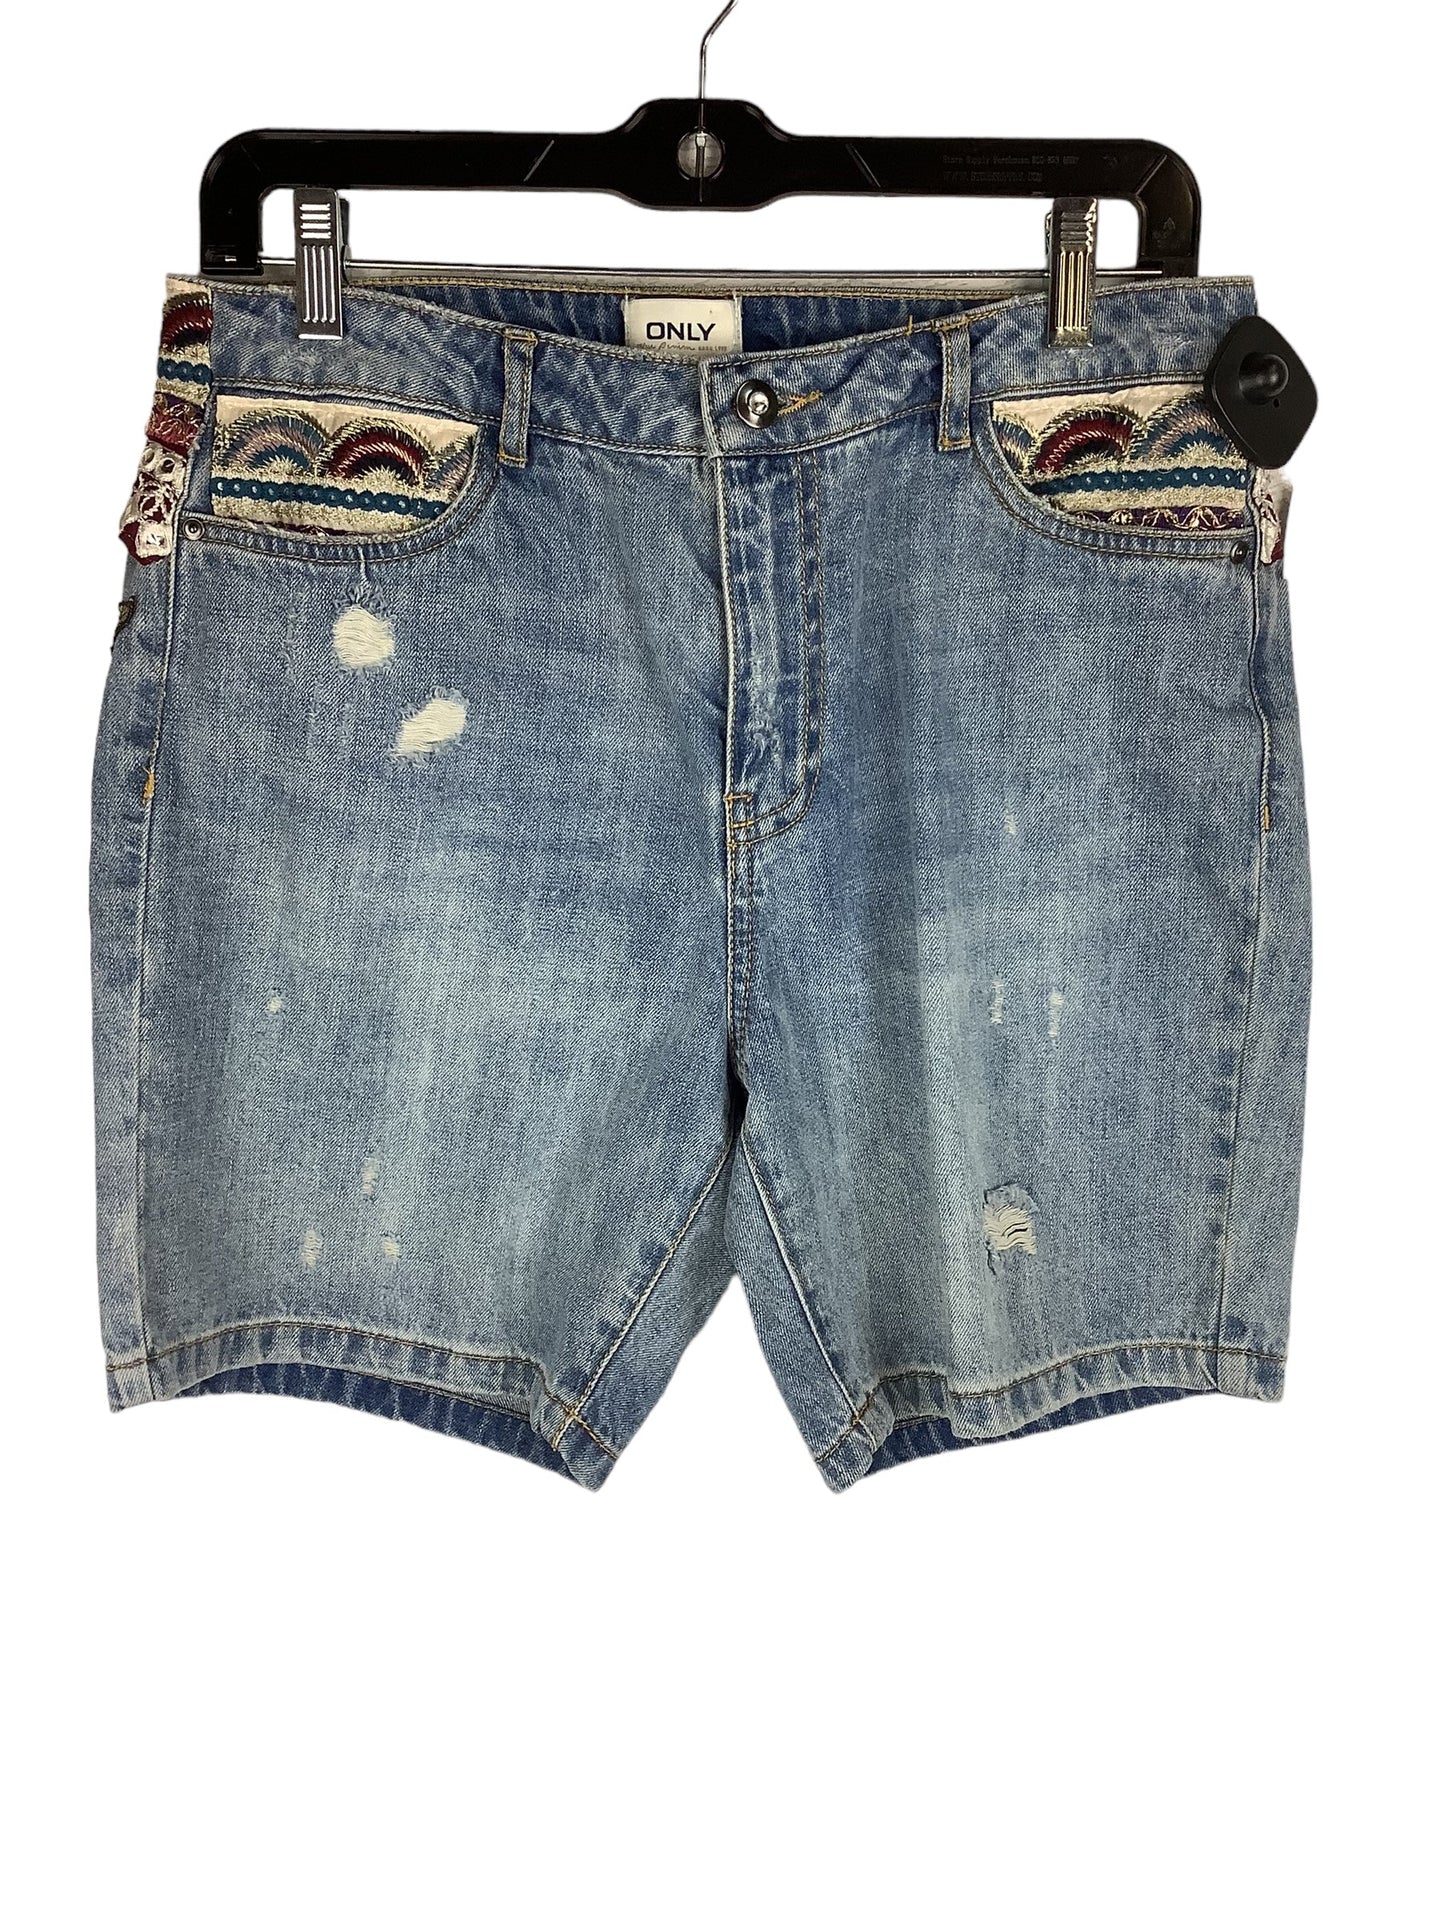 Blue Denim Shorts Clothes Mentor, Size 4